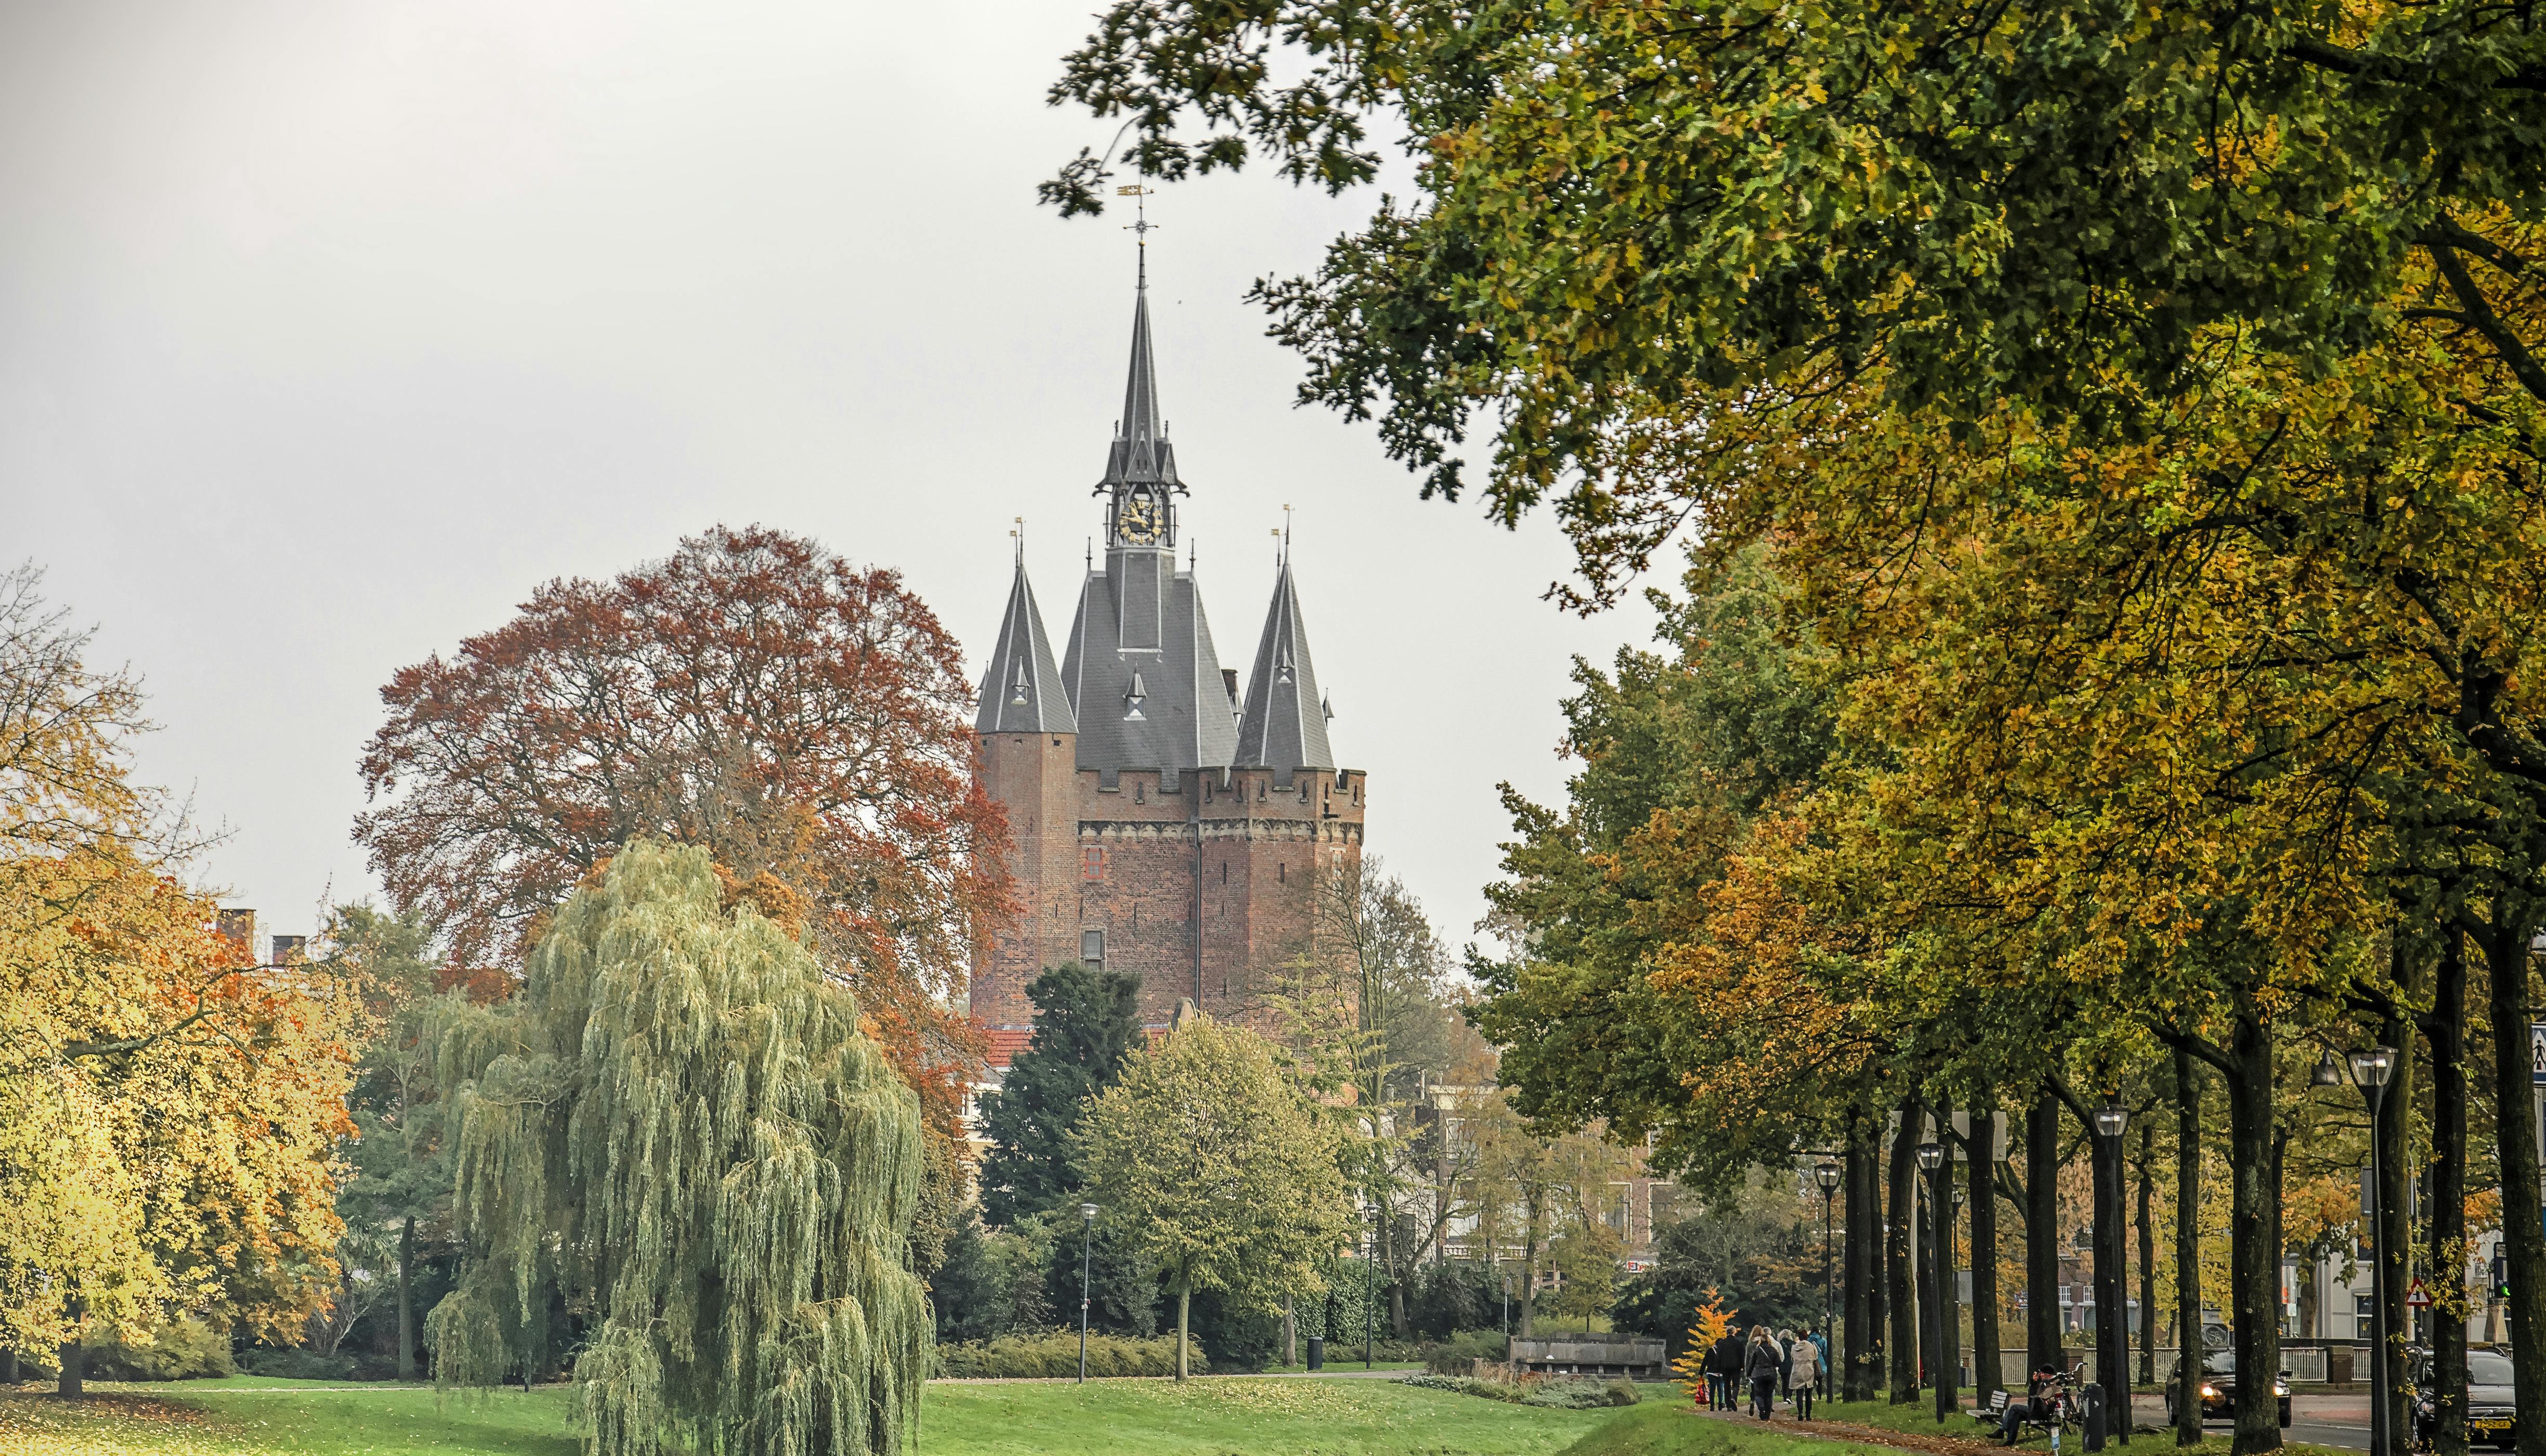 Smart wandeling in Zwolle met een interactief stadsspel